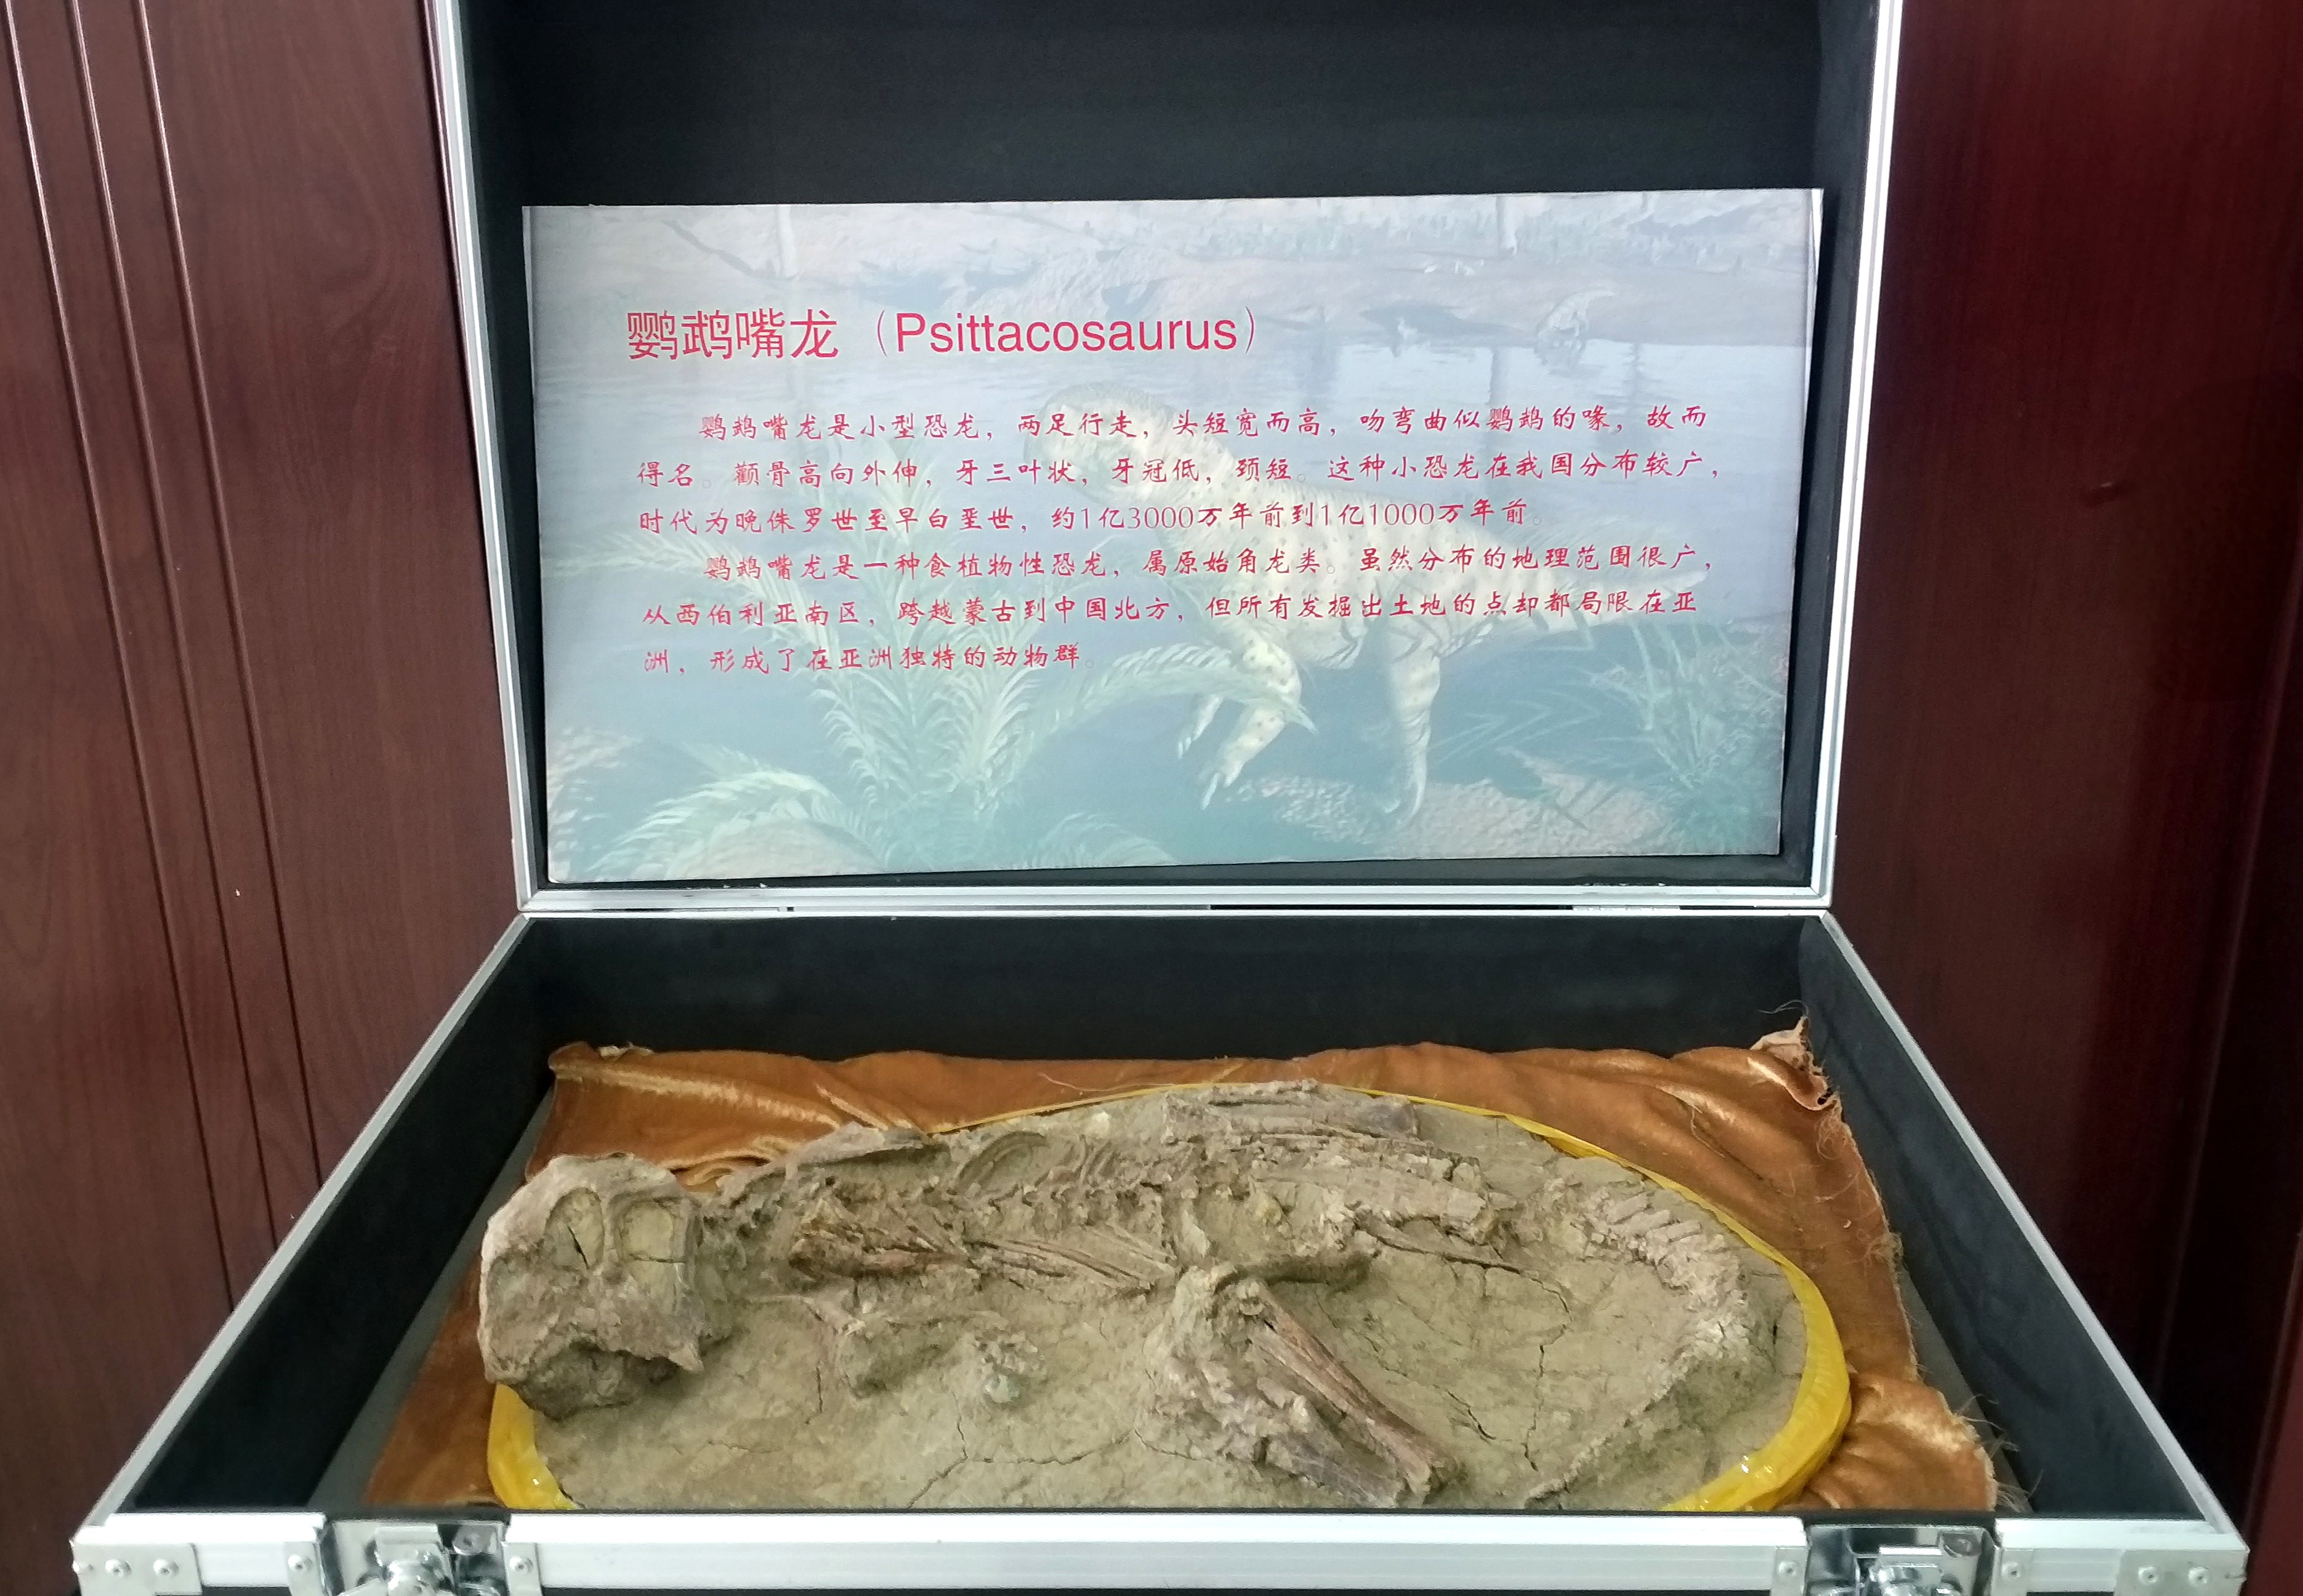 Απολίθωμα ενός Psittacosaurus που εκτίθεται στο Μουσείο Έκθεσης Παγετώνων του Τεταρτογενούς της Κίνας (中国第四纪冰川遗迹陈列馆: zhōngguó dìsìjì bīngchuān yíjì chénliè guǎn) - Φωτογραφία Εύα Παπαζή/CRI Greek